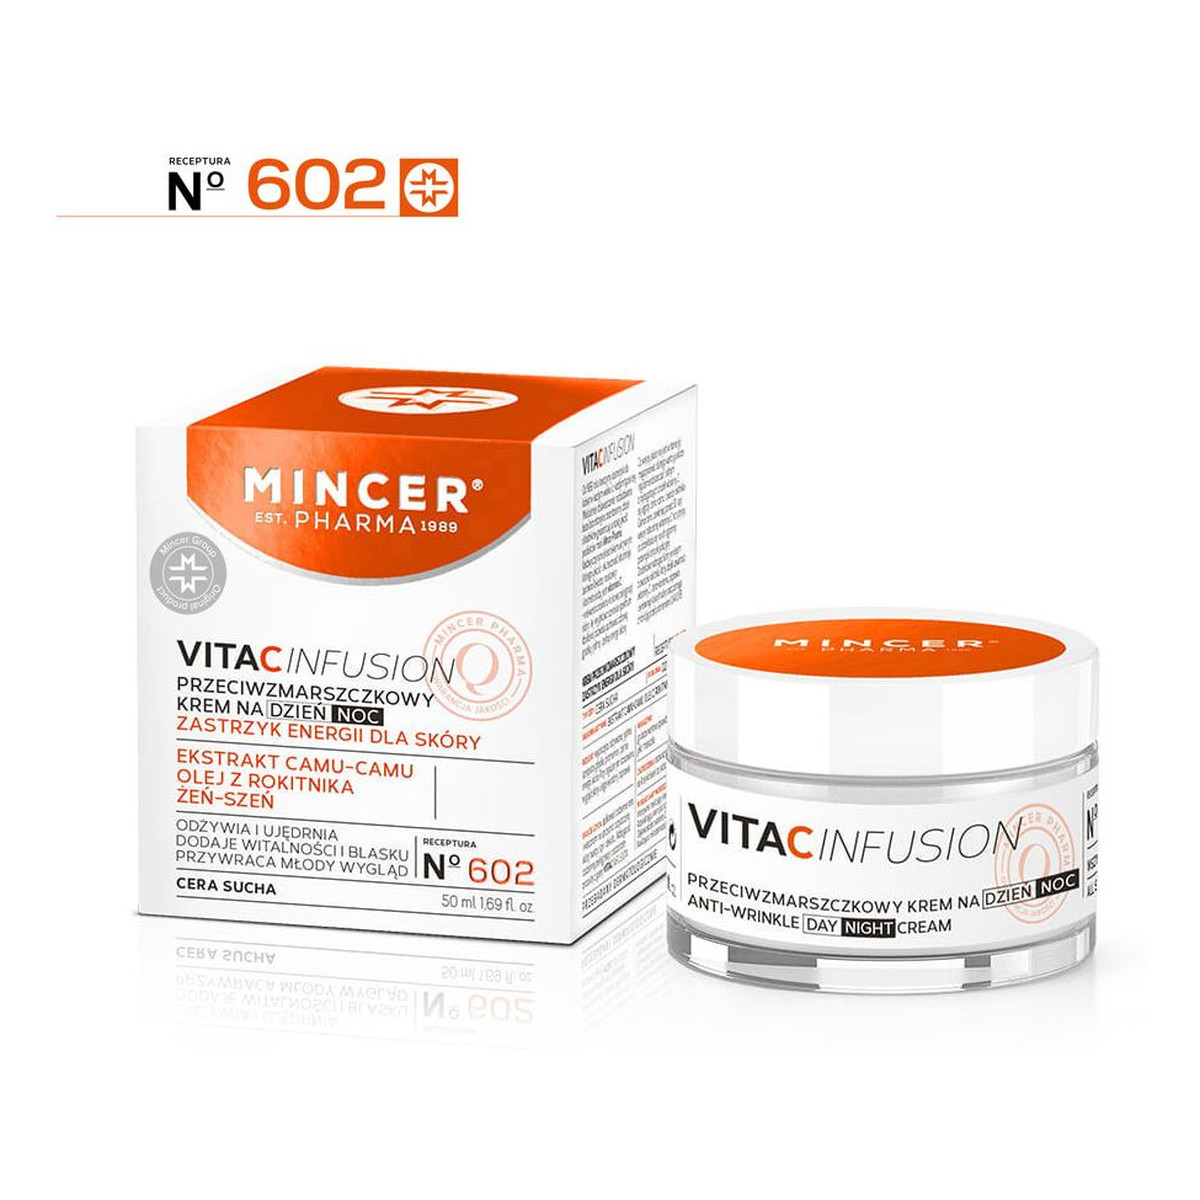 Mincer Pharma Vita C Infusion Krem Przeciwzmarszczowy No 602 + Nawilżający No 601 + Płyn micelarny No 611